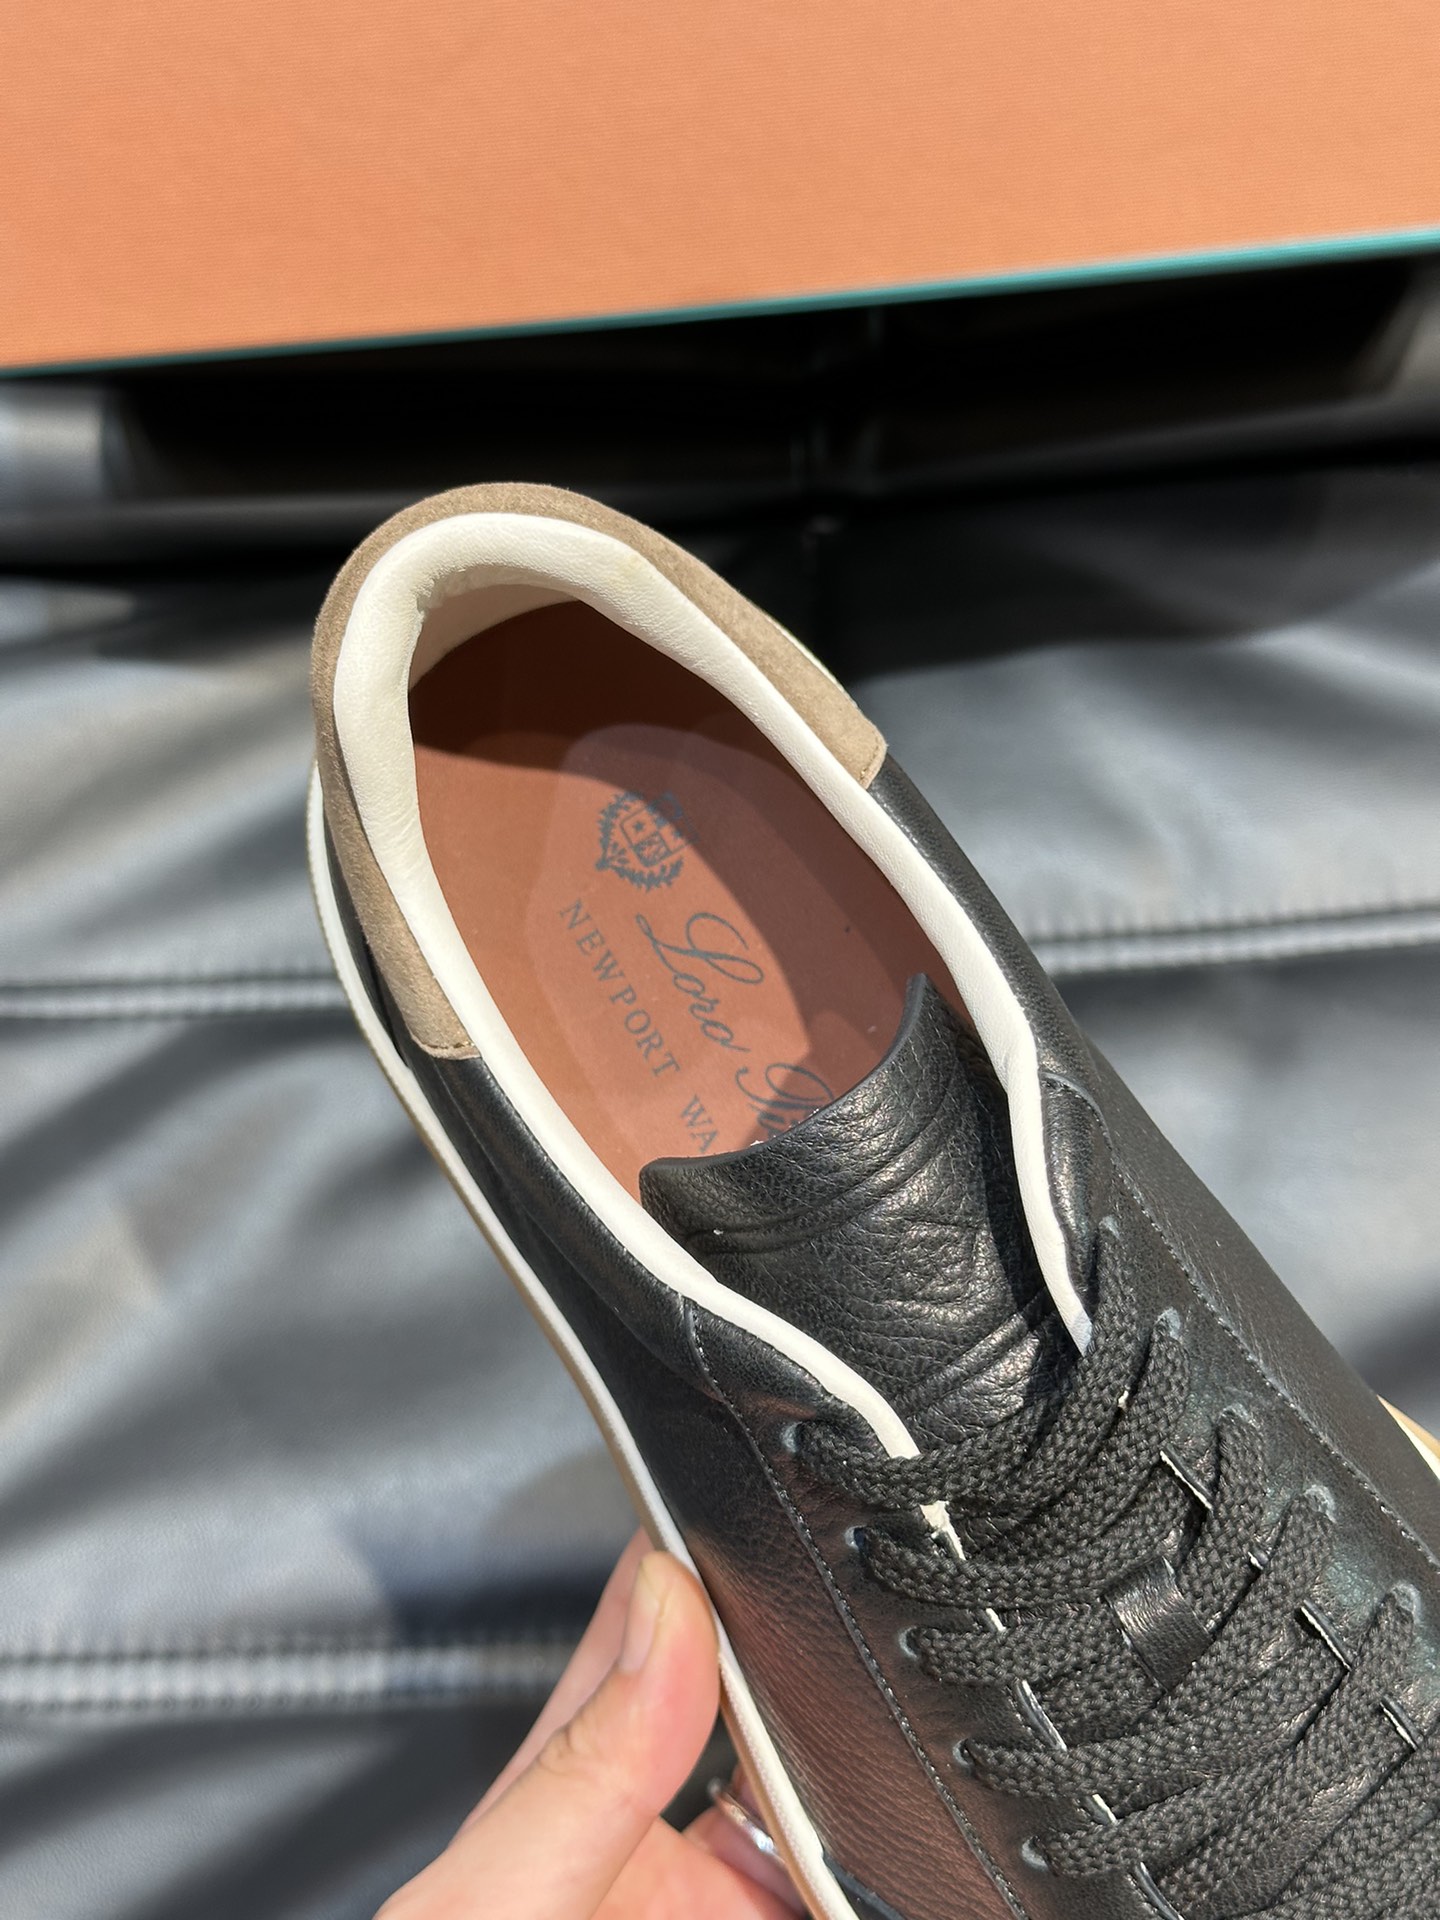 新款LP老钱风低帮休闲网球鞋LoroPiana高端系列推出了以柔软鹿皮制成的运动鞋款式天然材料的透气属性